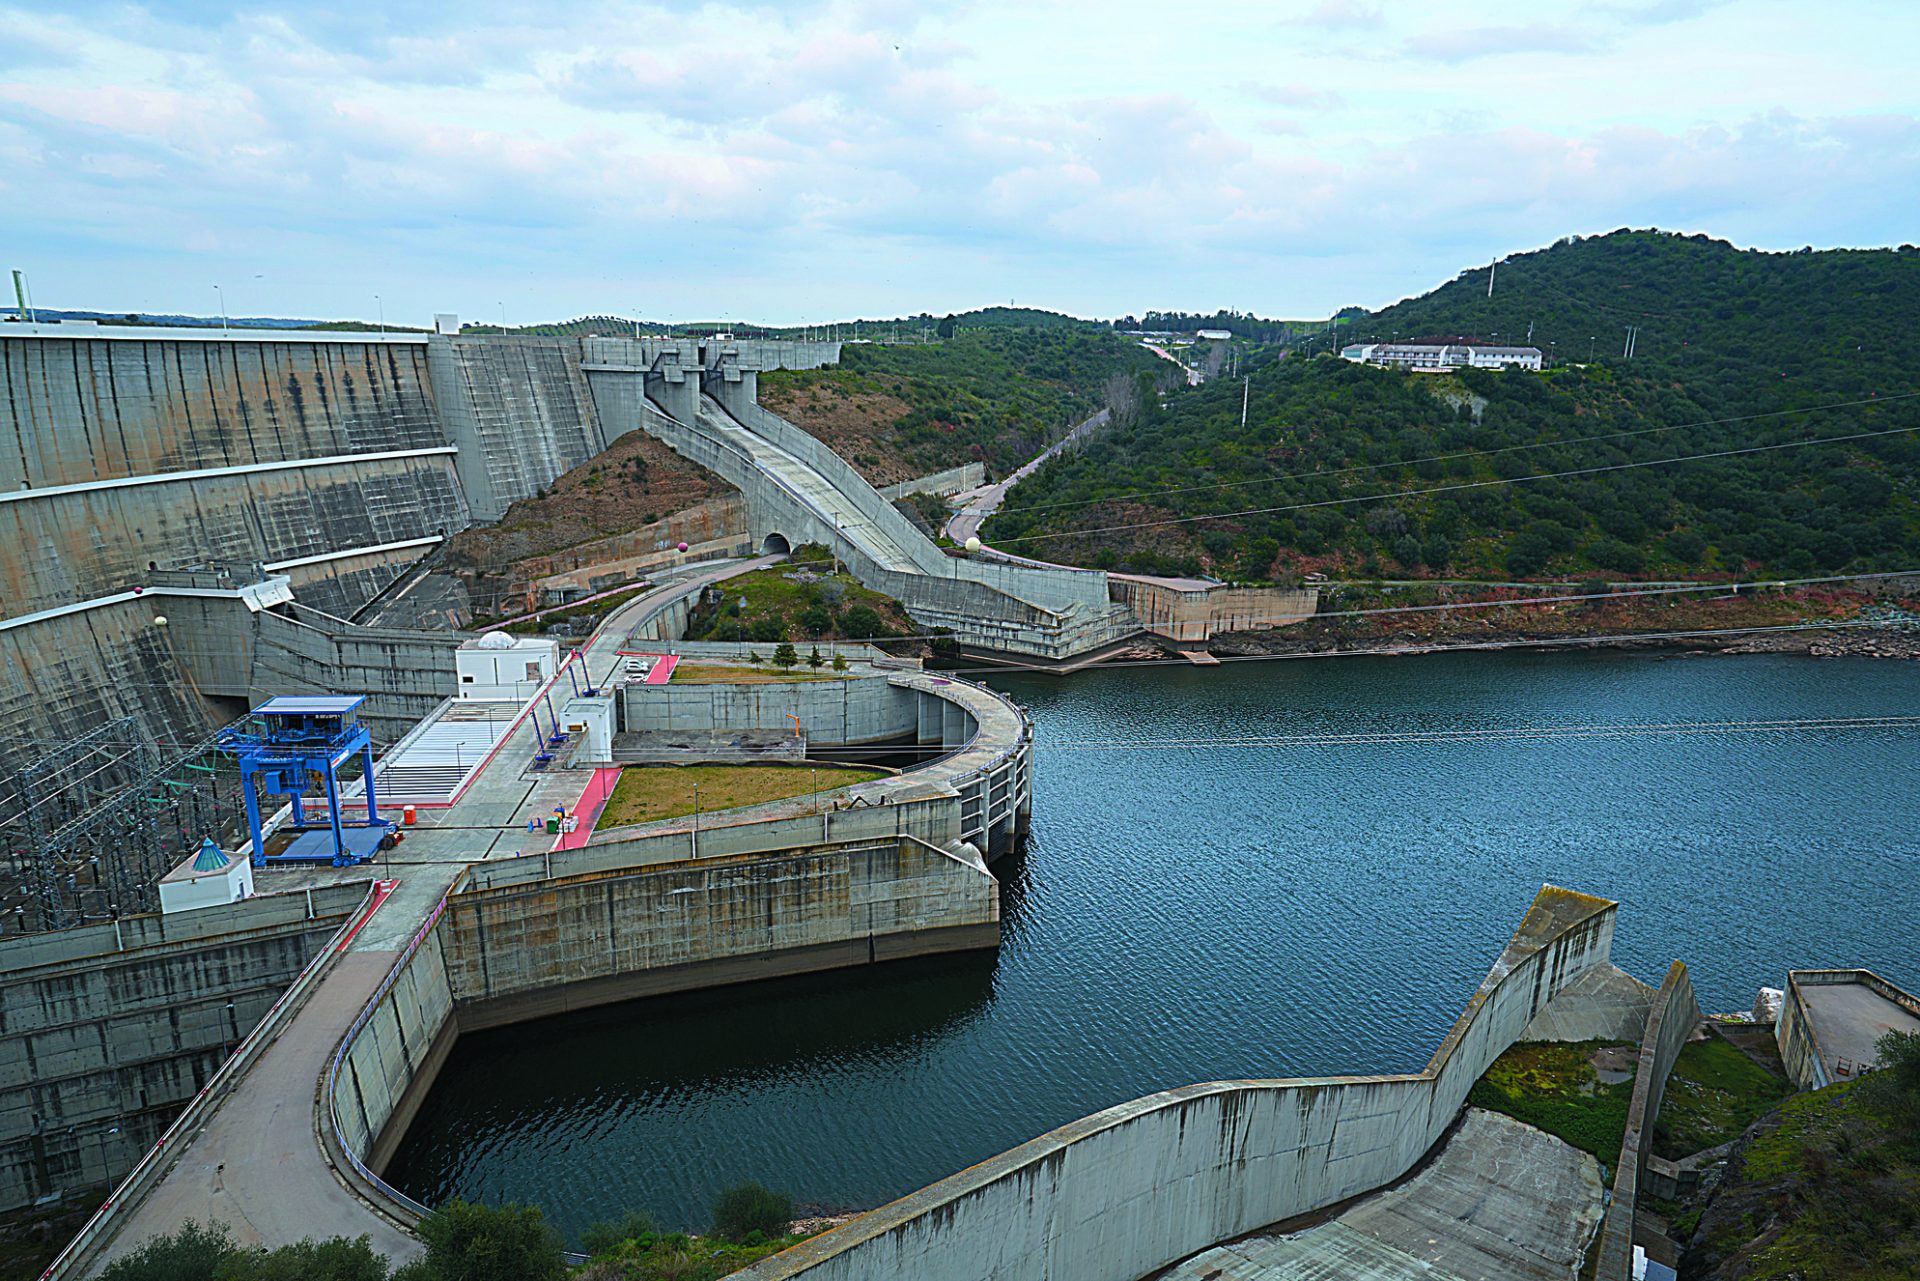 Venda de barragens: Discussão sem fim à vista